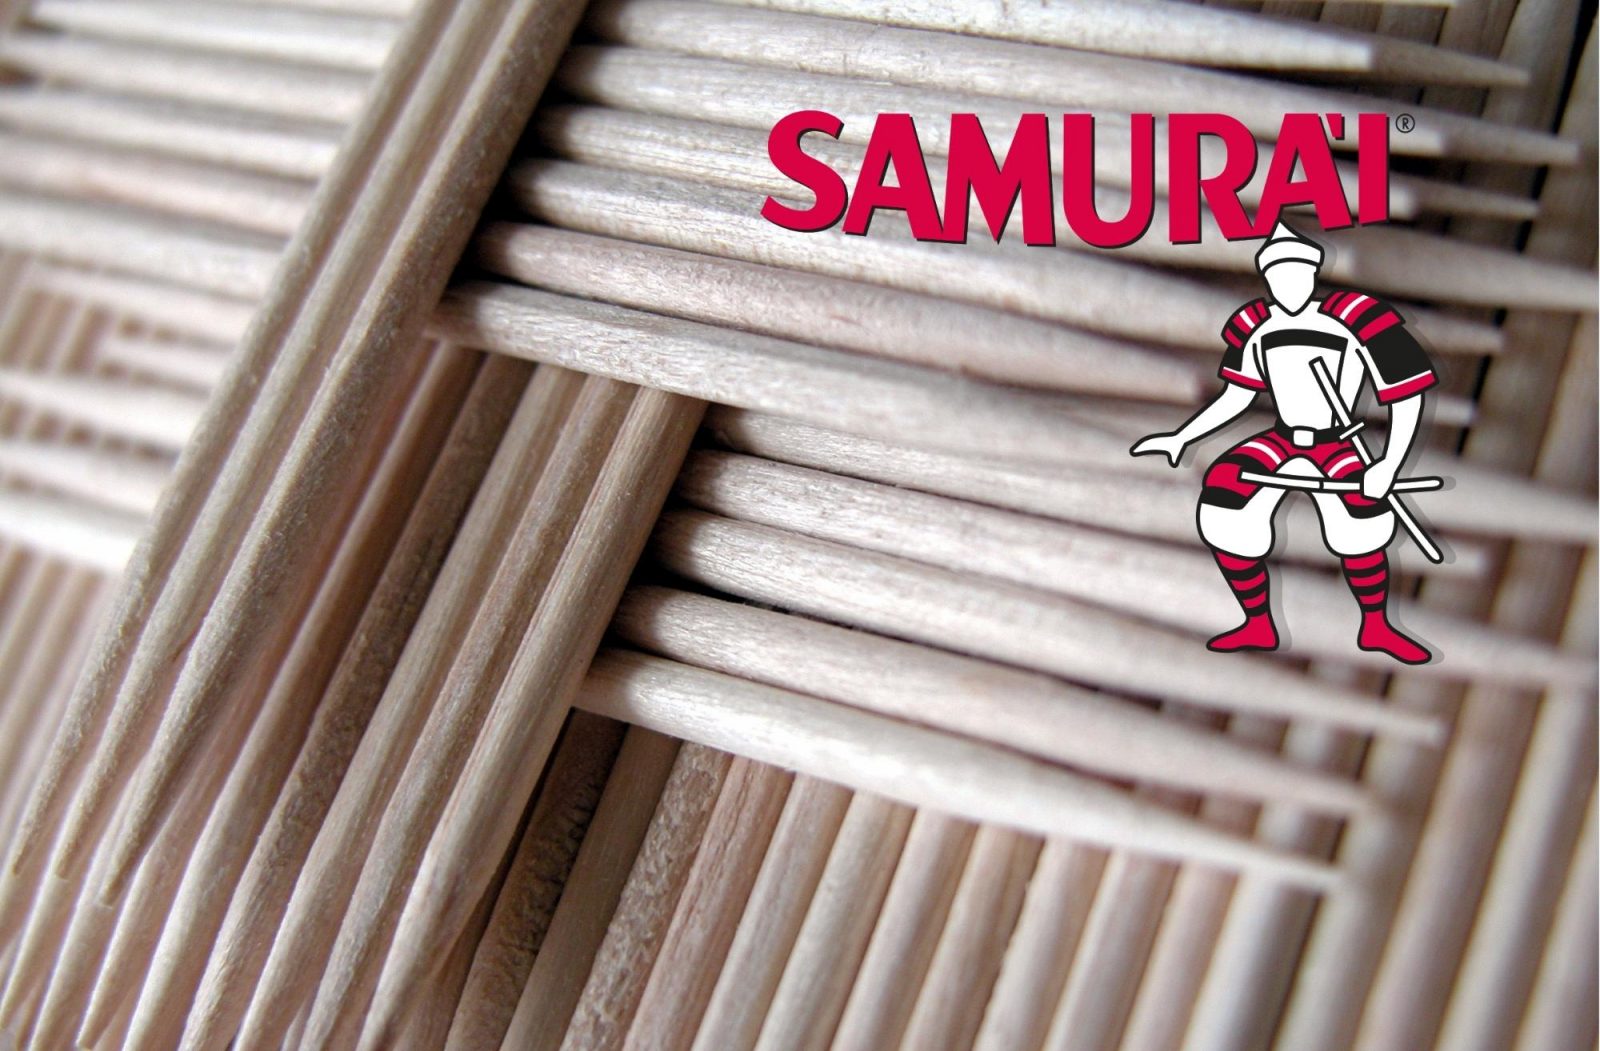 sisma samurai cotoneve farmacotone qualità made in italy (4)